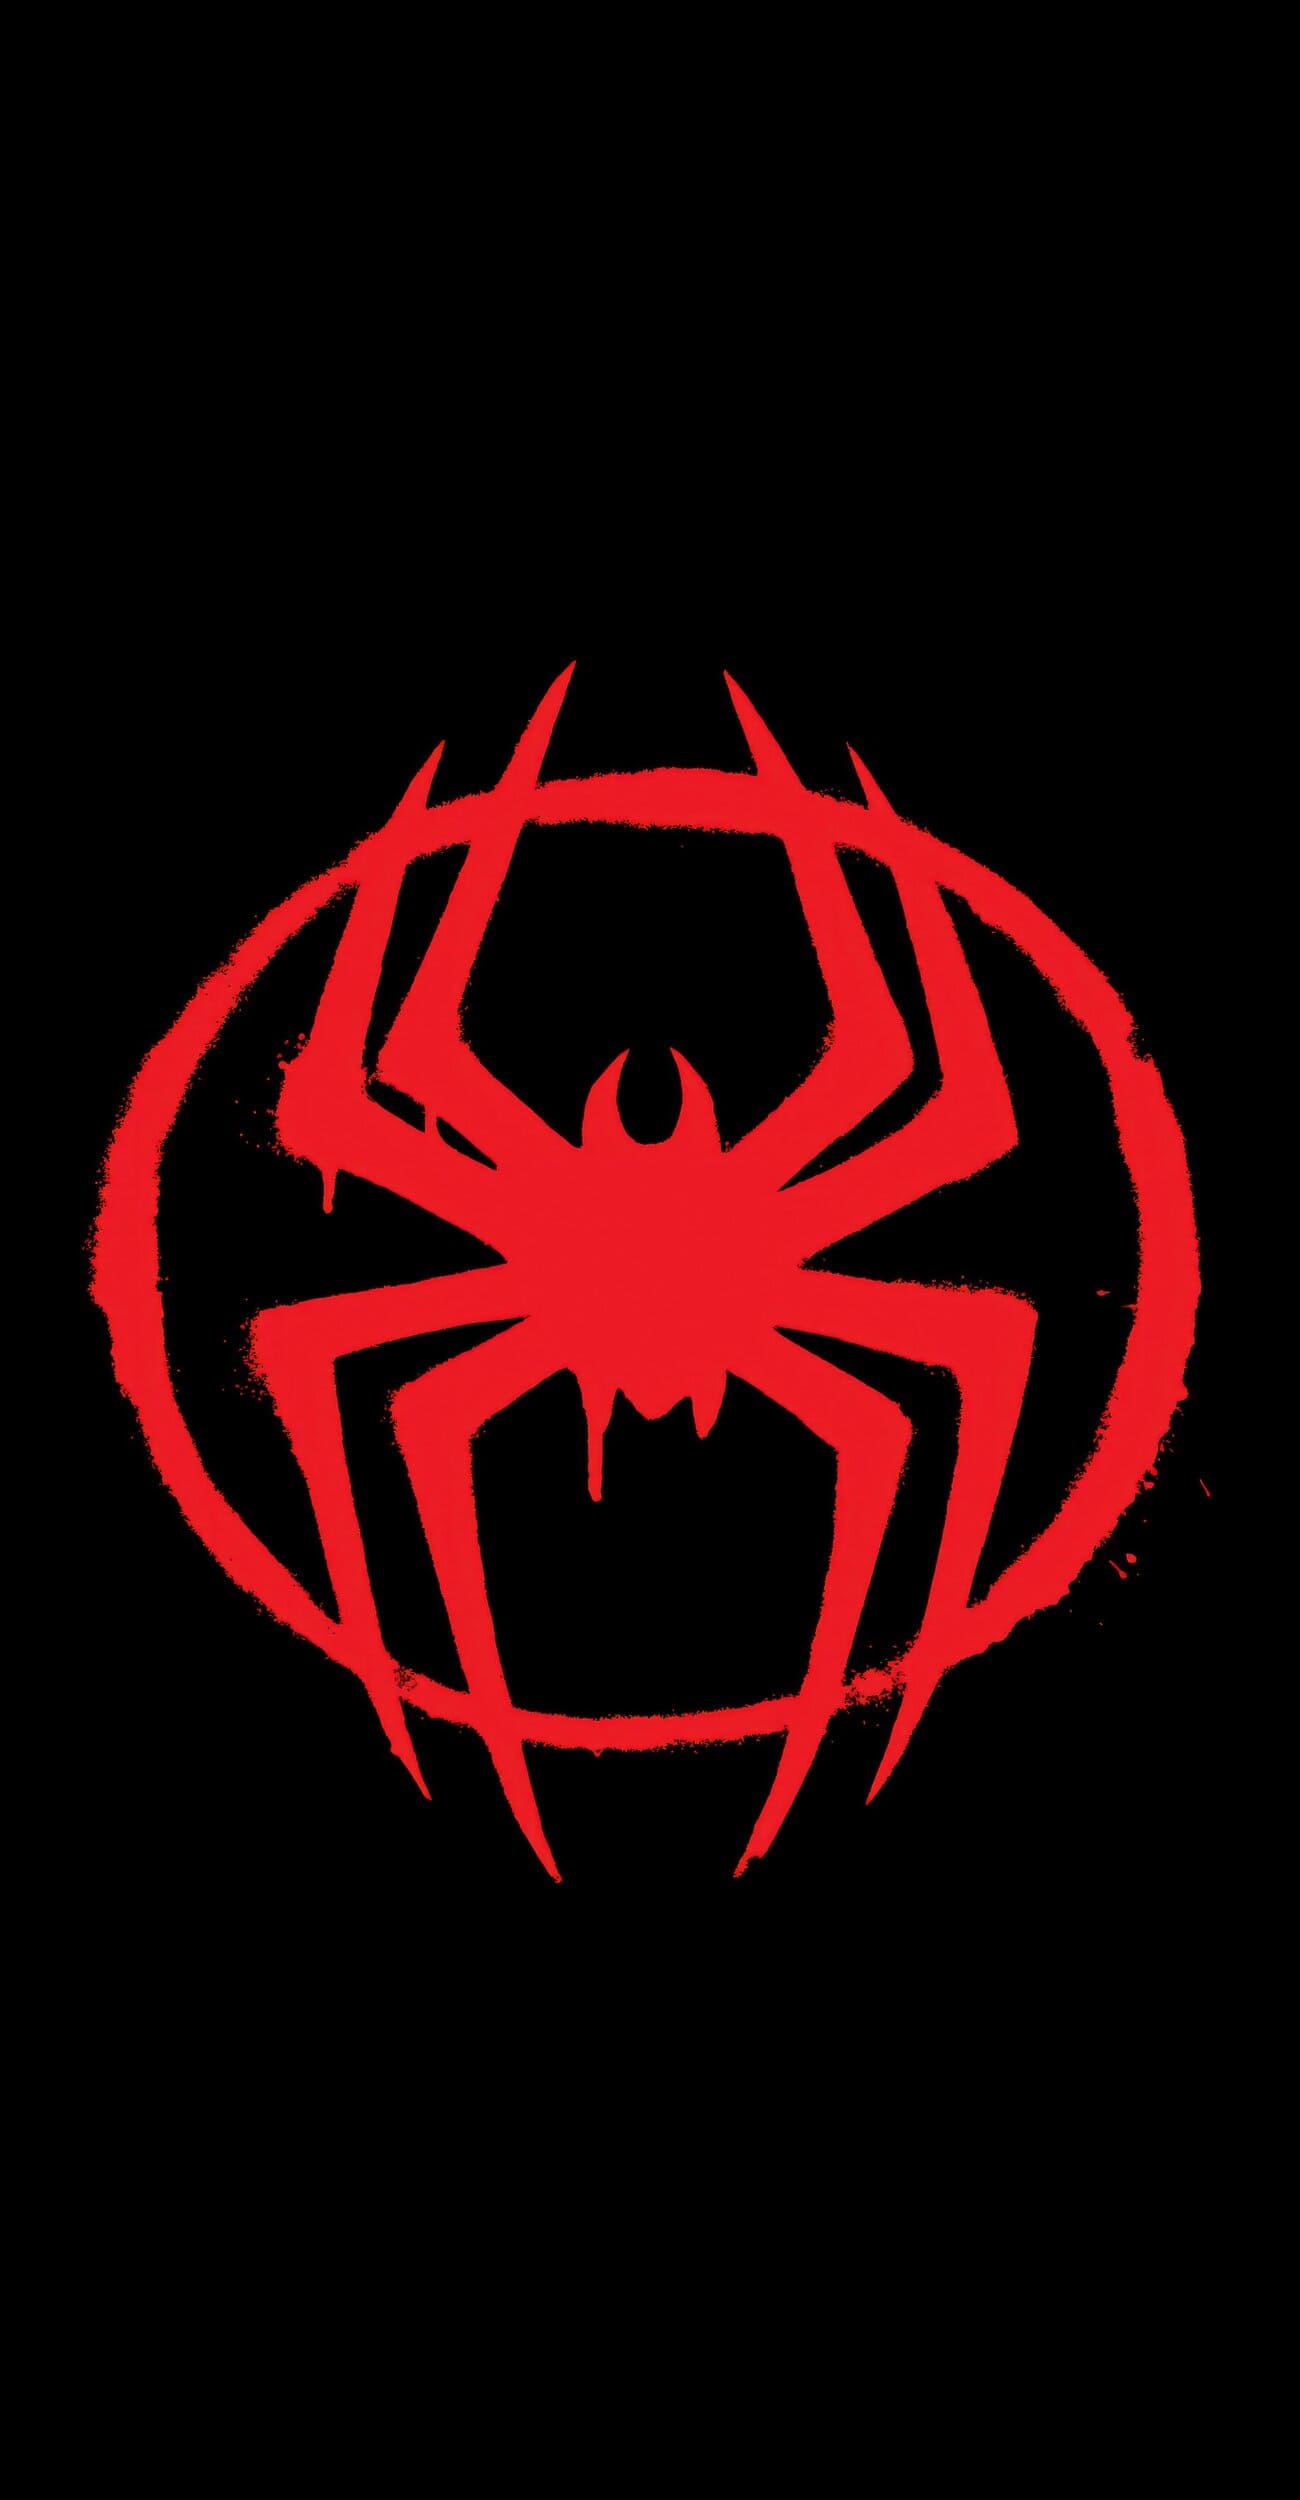 خلفية شعار سبايدر مان احمر مع خلفية سوداء بجودة 4K للايفون